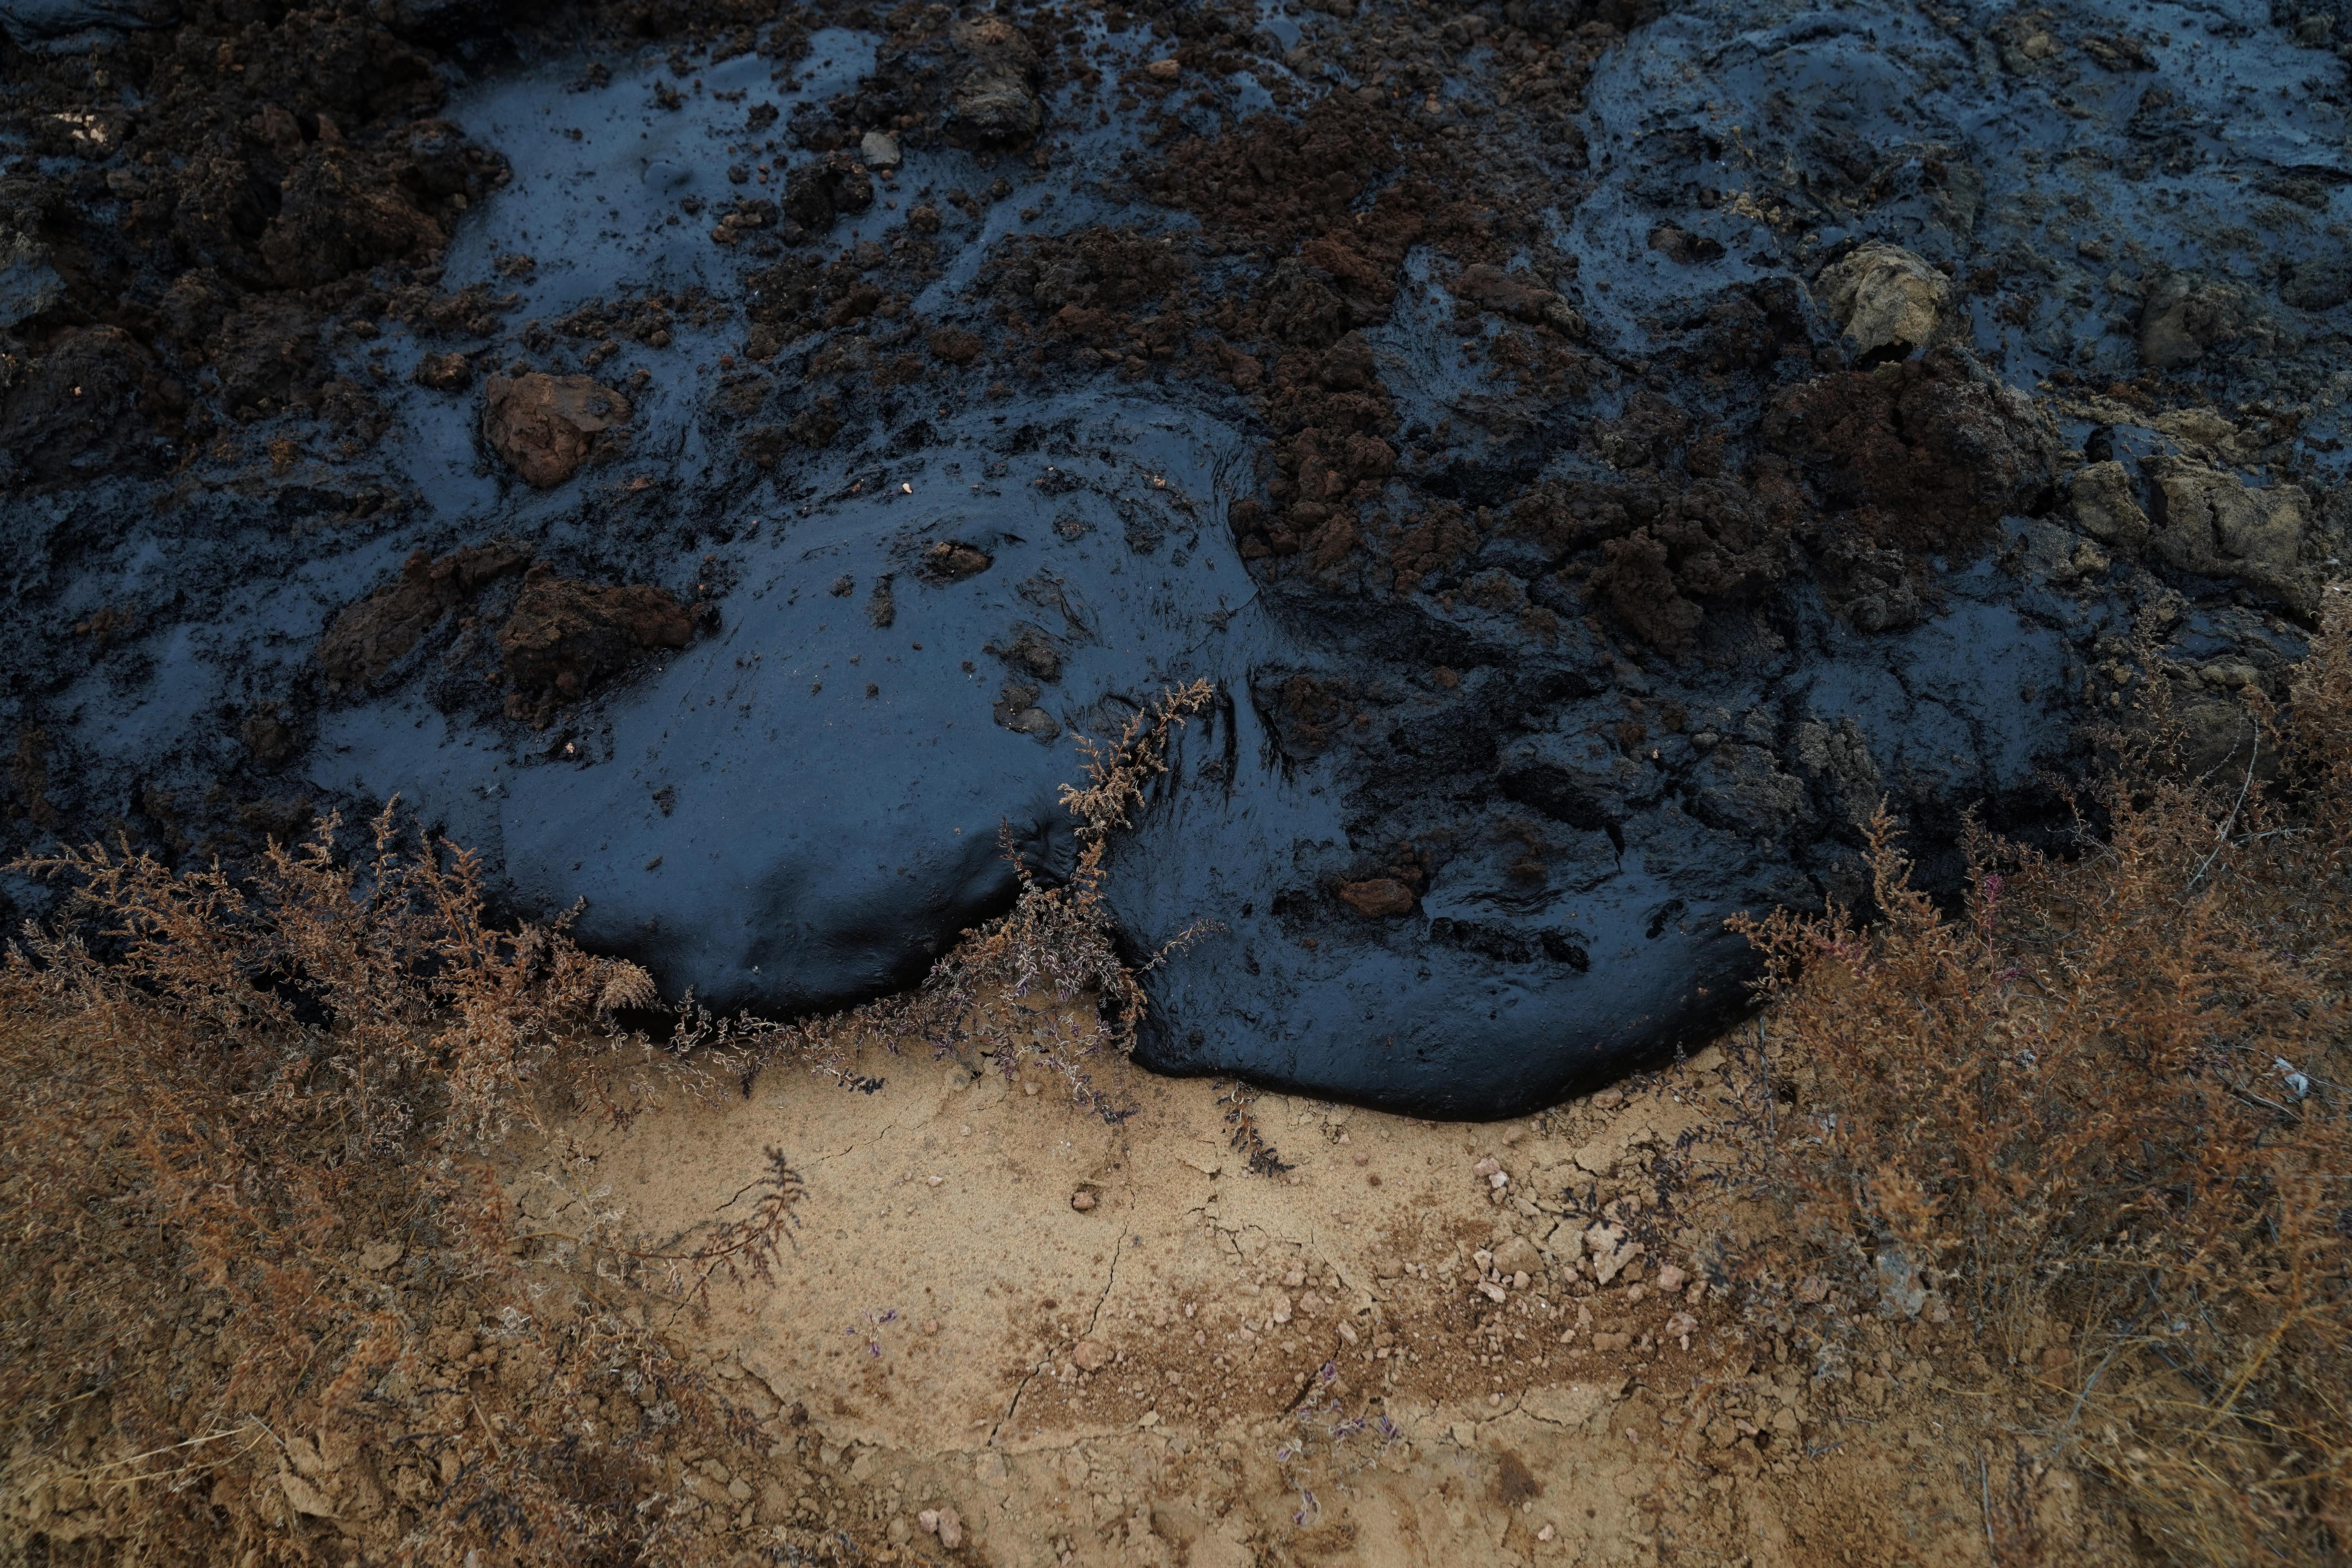 腾格里沙漠排污图片